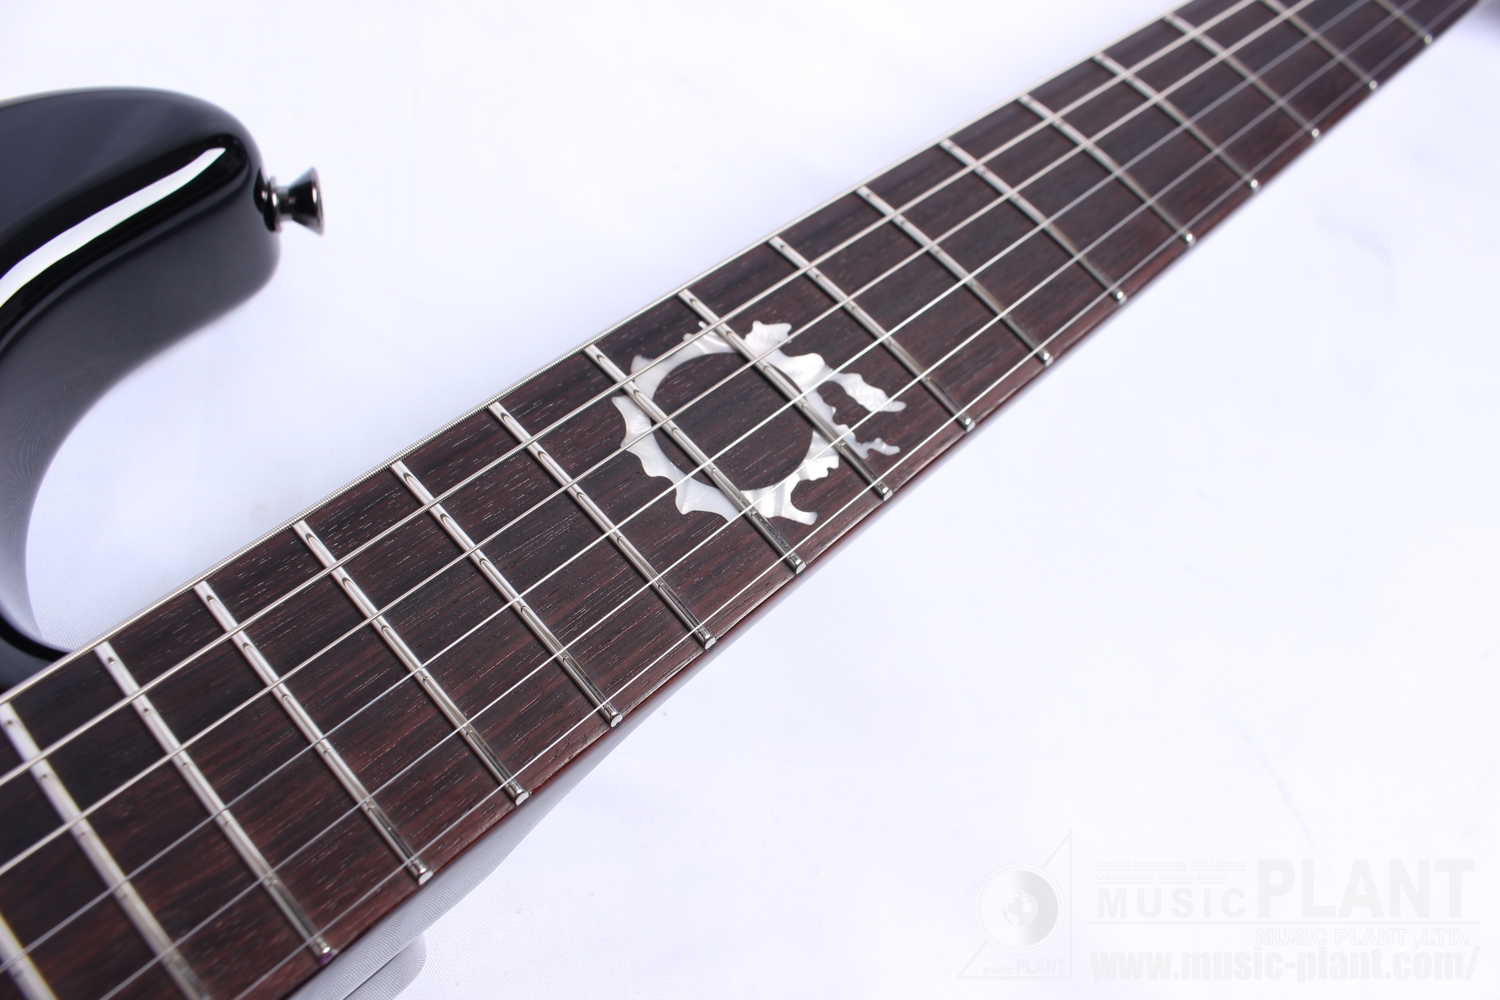 FINAL FANTASY XIV Stratocaster, Rosewood Fingerboard, Black追加画像